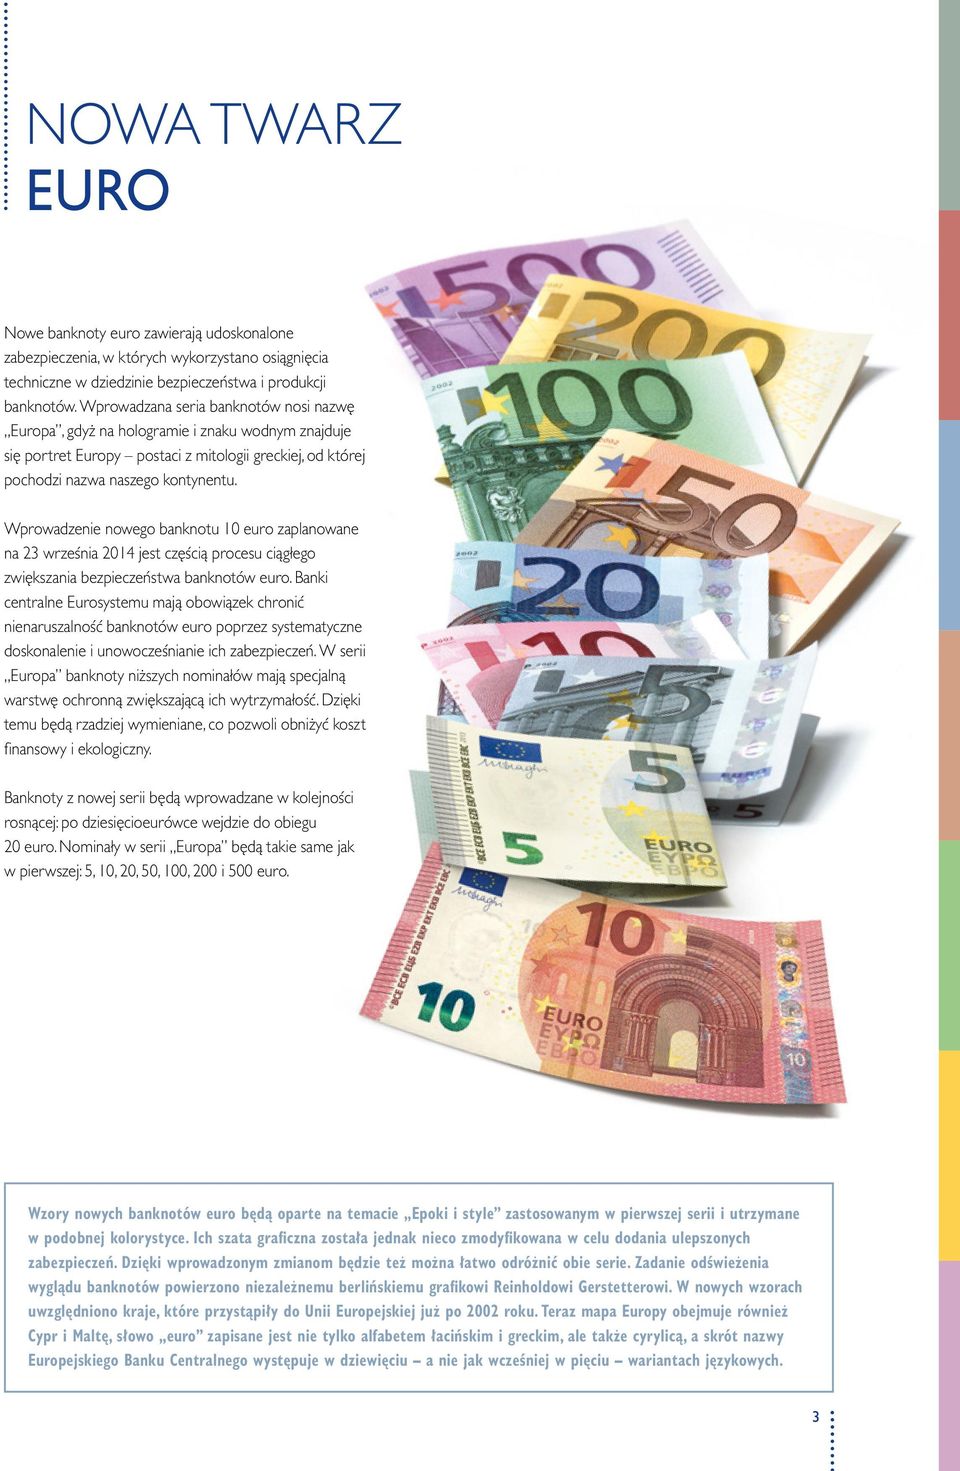 Wprowadzenie nowego banknotu euro zaplanowane na 23 września jest częścią procesu ciągłego zwiększania bezpieczeństwa banknotów euro.